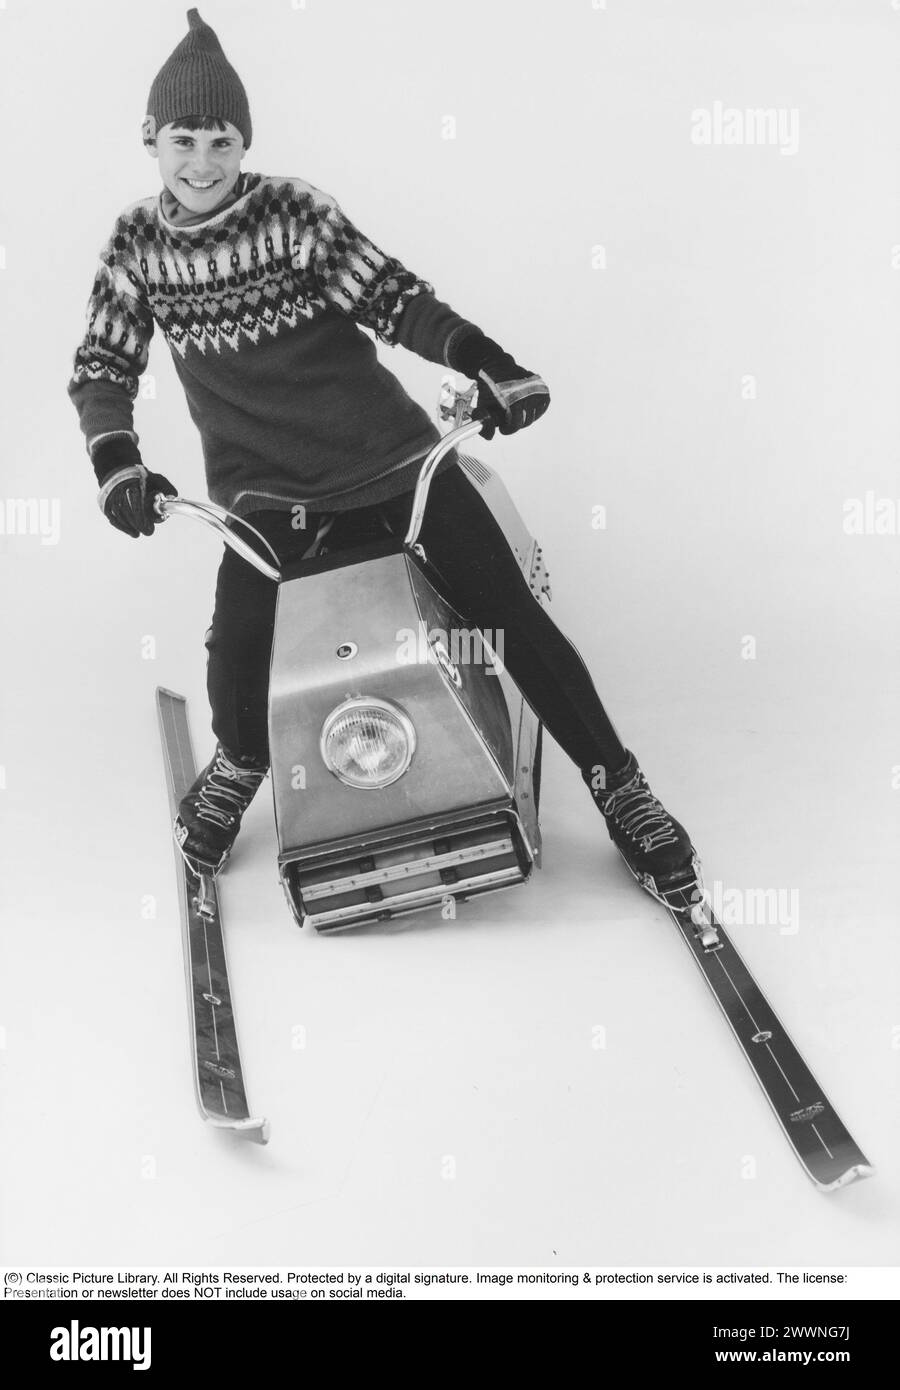 „Larven“ (die caterpillar) Ein schwedisches unkonventionelles Schneemobil, das nun Kultstatus erreicht hat. Es bestand aus einer langen raupenkette mit einem Sitz, auf dem der Fahrer mit Hilfe seines Gewichts und mit seinen Skiern saß und lenkte. Sie wurde 1965 von der Firma Lenko in Östersund, gegründet von Lennart Nilsson, eingeführt. Bei seiner Einführung kostete er 3.000 SEK. Insgesamt wurden etwa 4.500 Exemplare gebaut. Die Höchstgeschwindigkeit betrug 48 km/h. Die caterpillar wurde mit glasfaserverstärkten Kunststoffbändern nach vorne getrieben. Die raupe war 178 cm lang, 81 cm breit und hatte ein Gesamtgewicht von 76 kg. Alumin Stockfoto